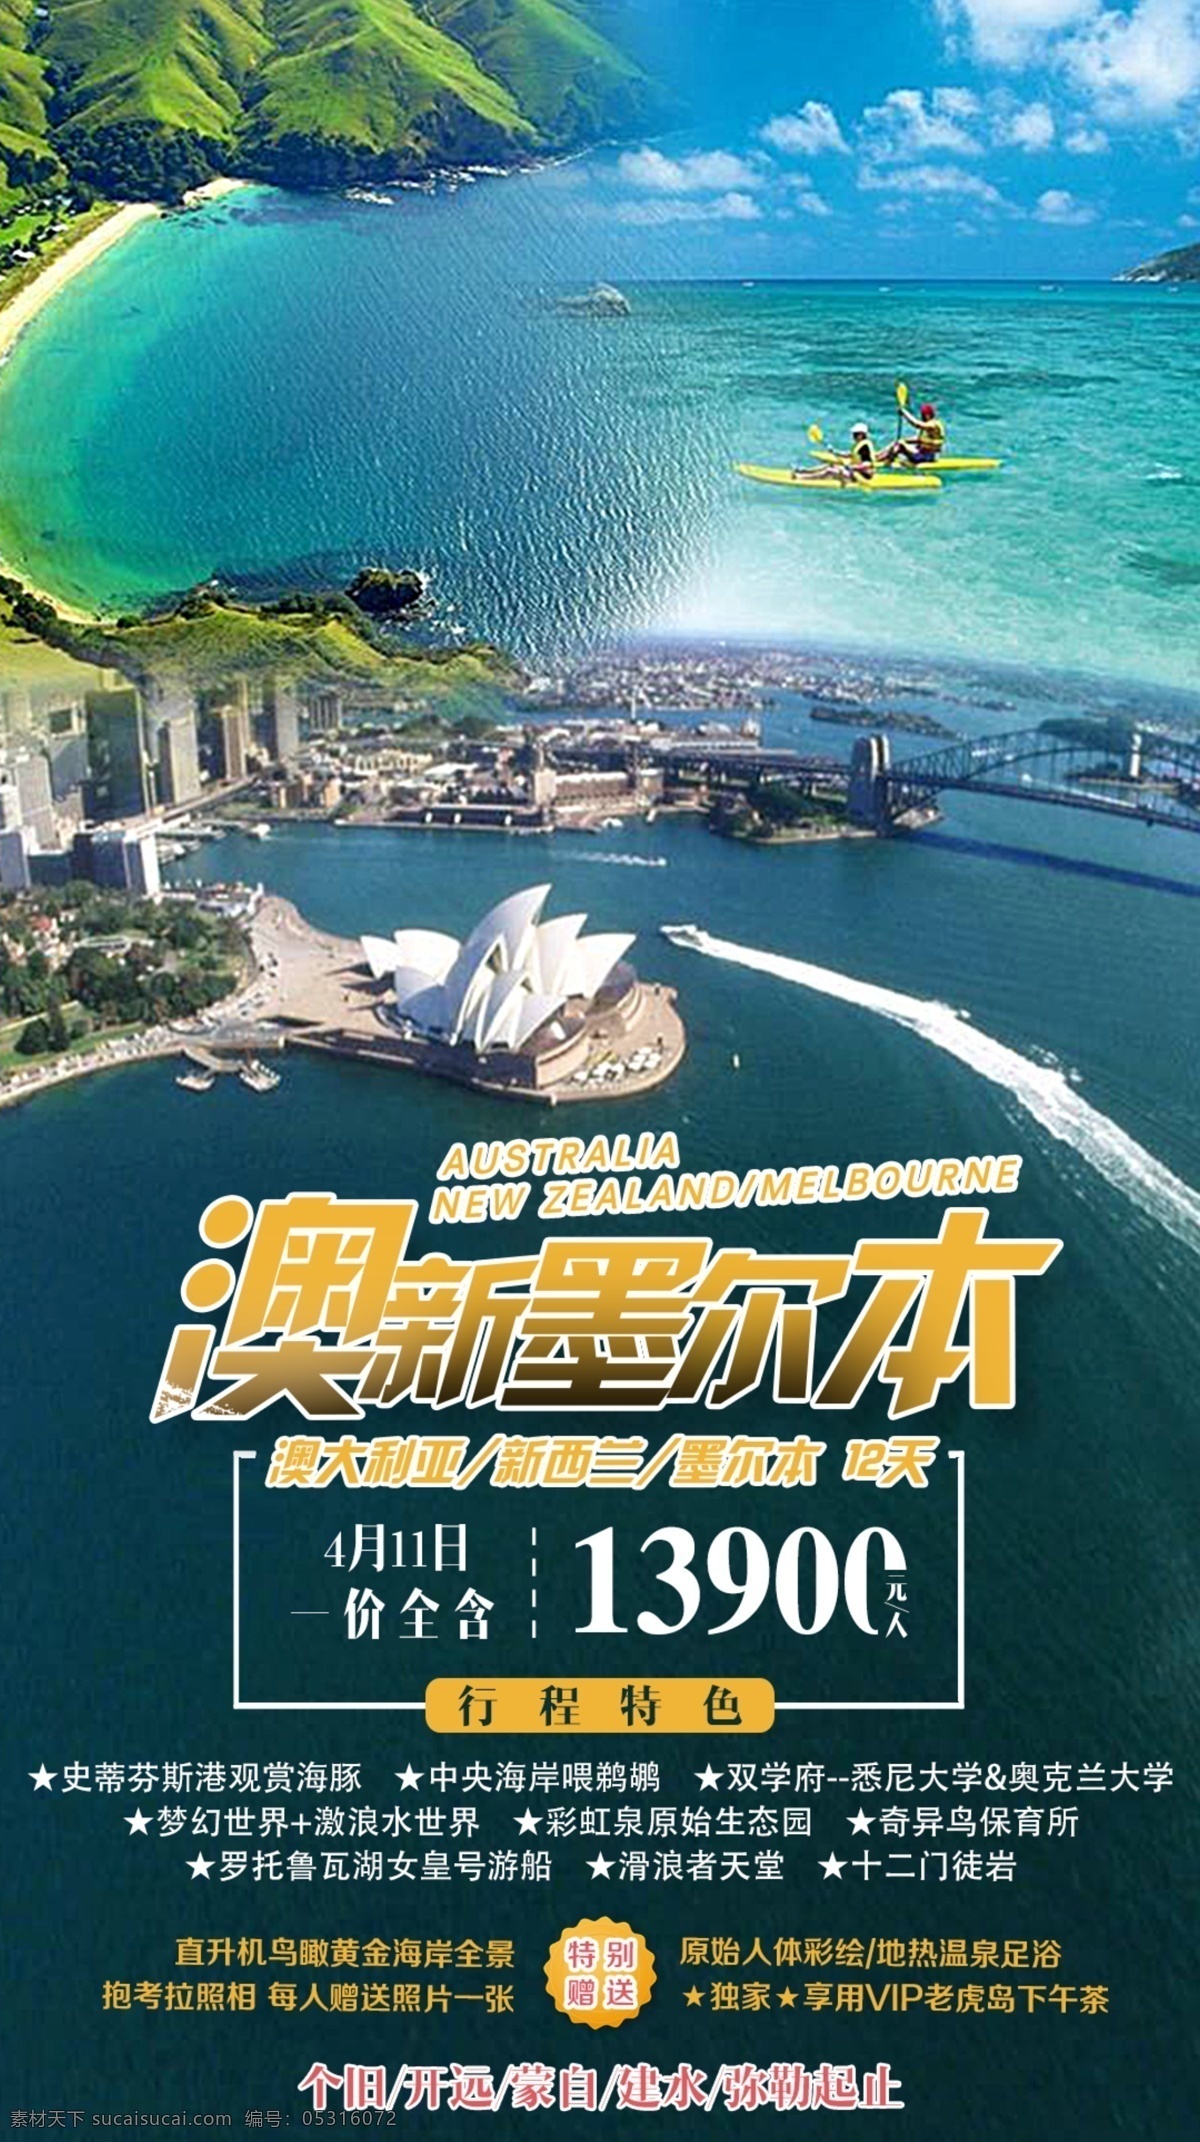 澳新旅游 澳大利亚 旅游 澳洲旅游 旅游海报 微信海报 朋友圈海报